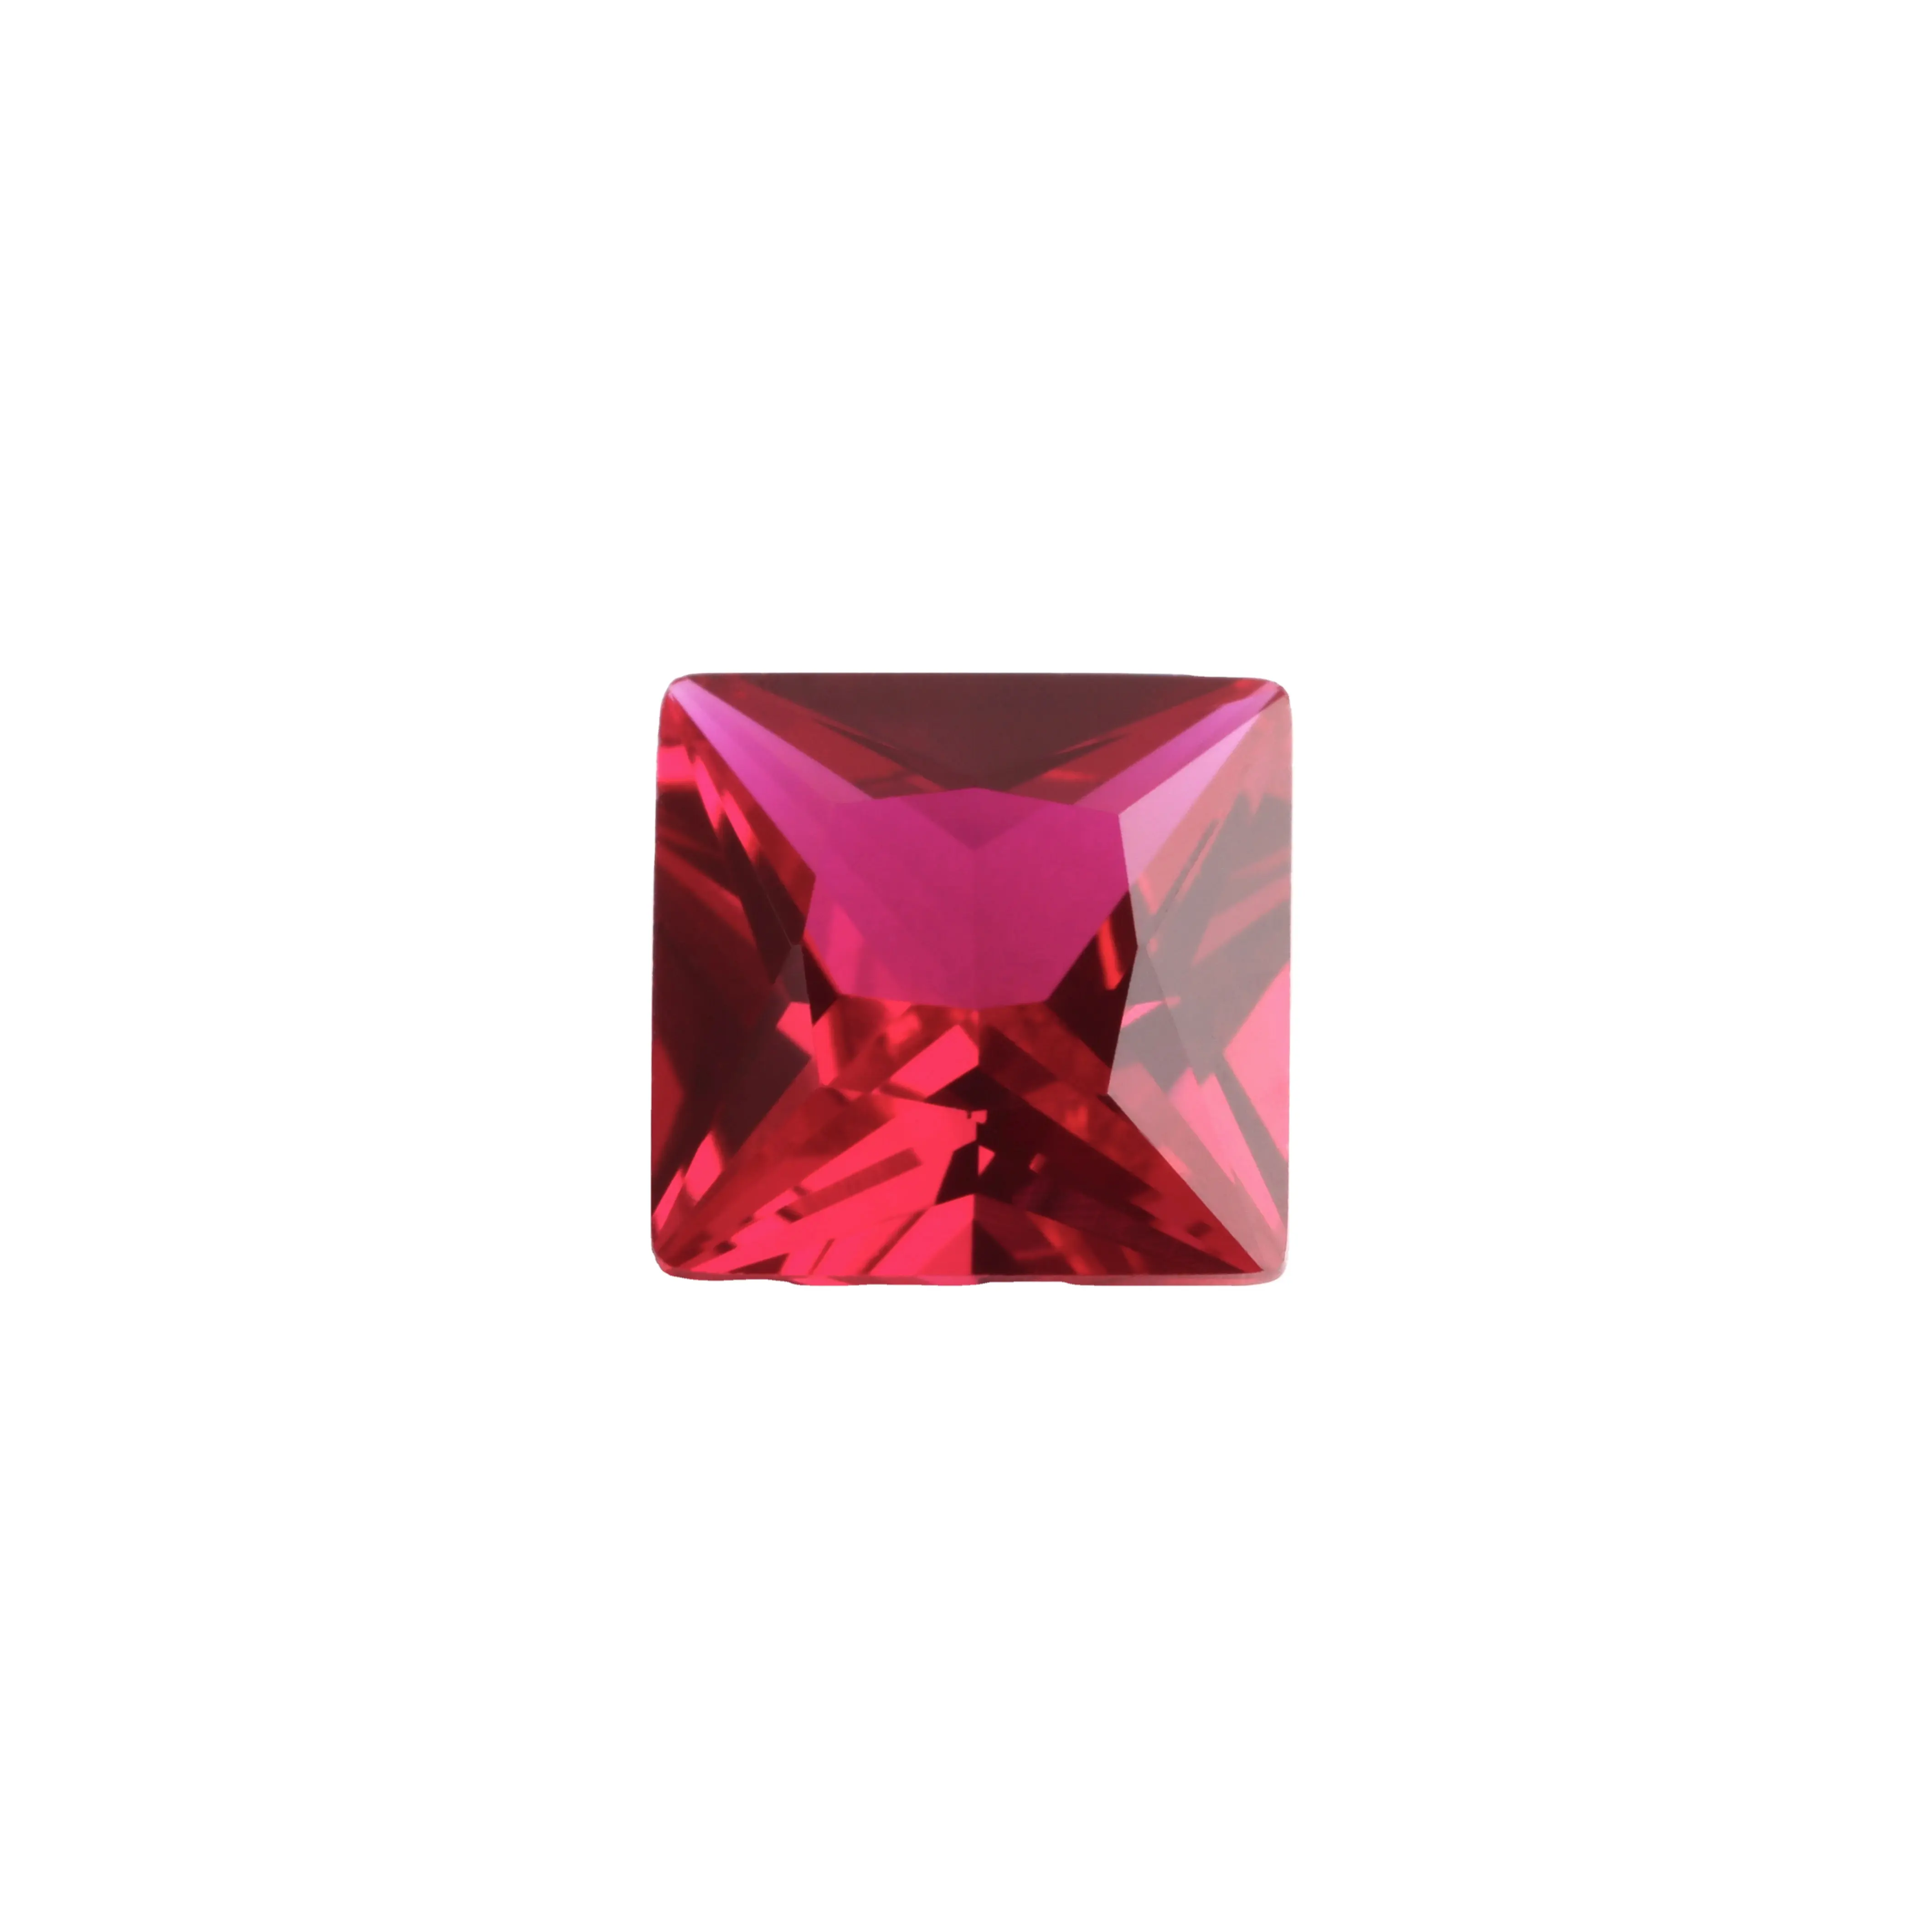 Идеальное качество 6*6 размер квадратной формы вырезать многофункциональный красный цвет синтетический Рубин